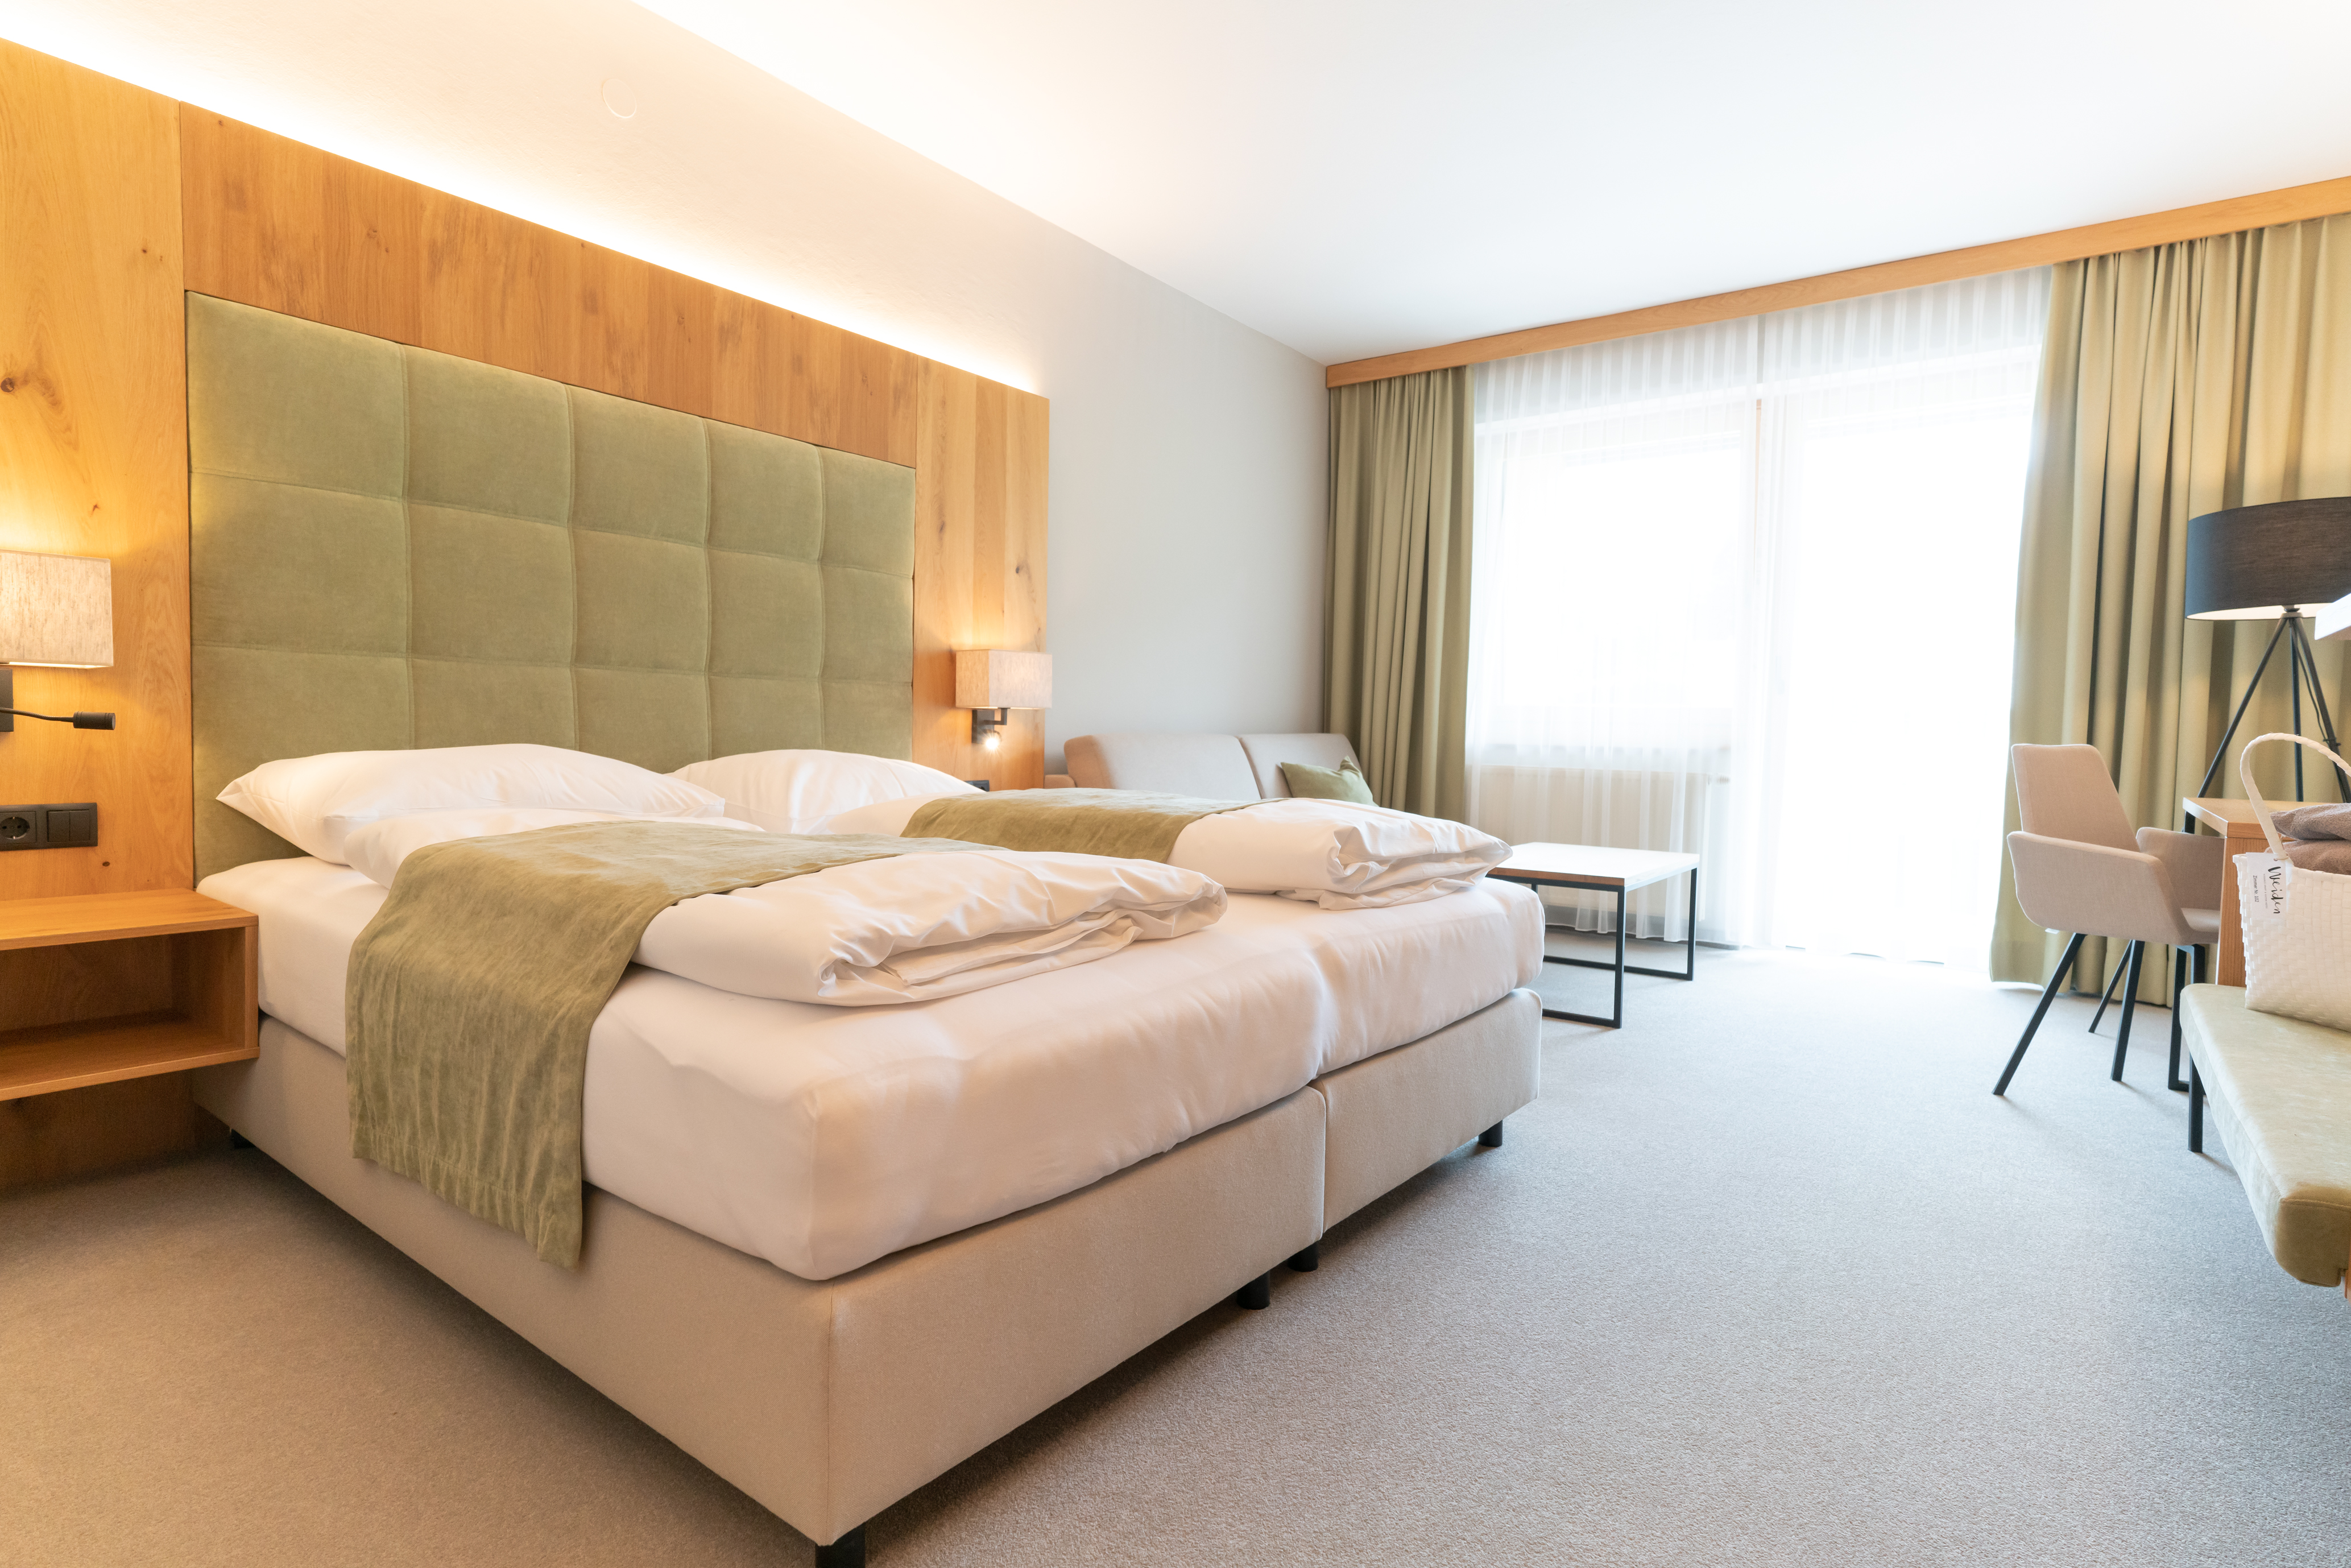 400-Euro-Gutschein für Urlaub im Apart & Suiten Hotel Weiden Niederl